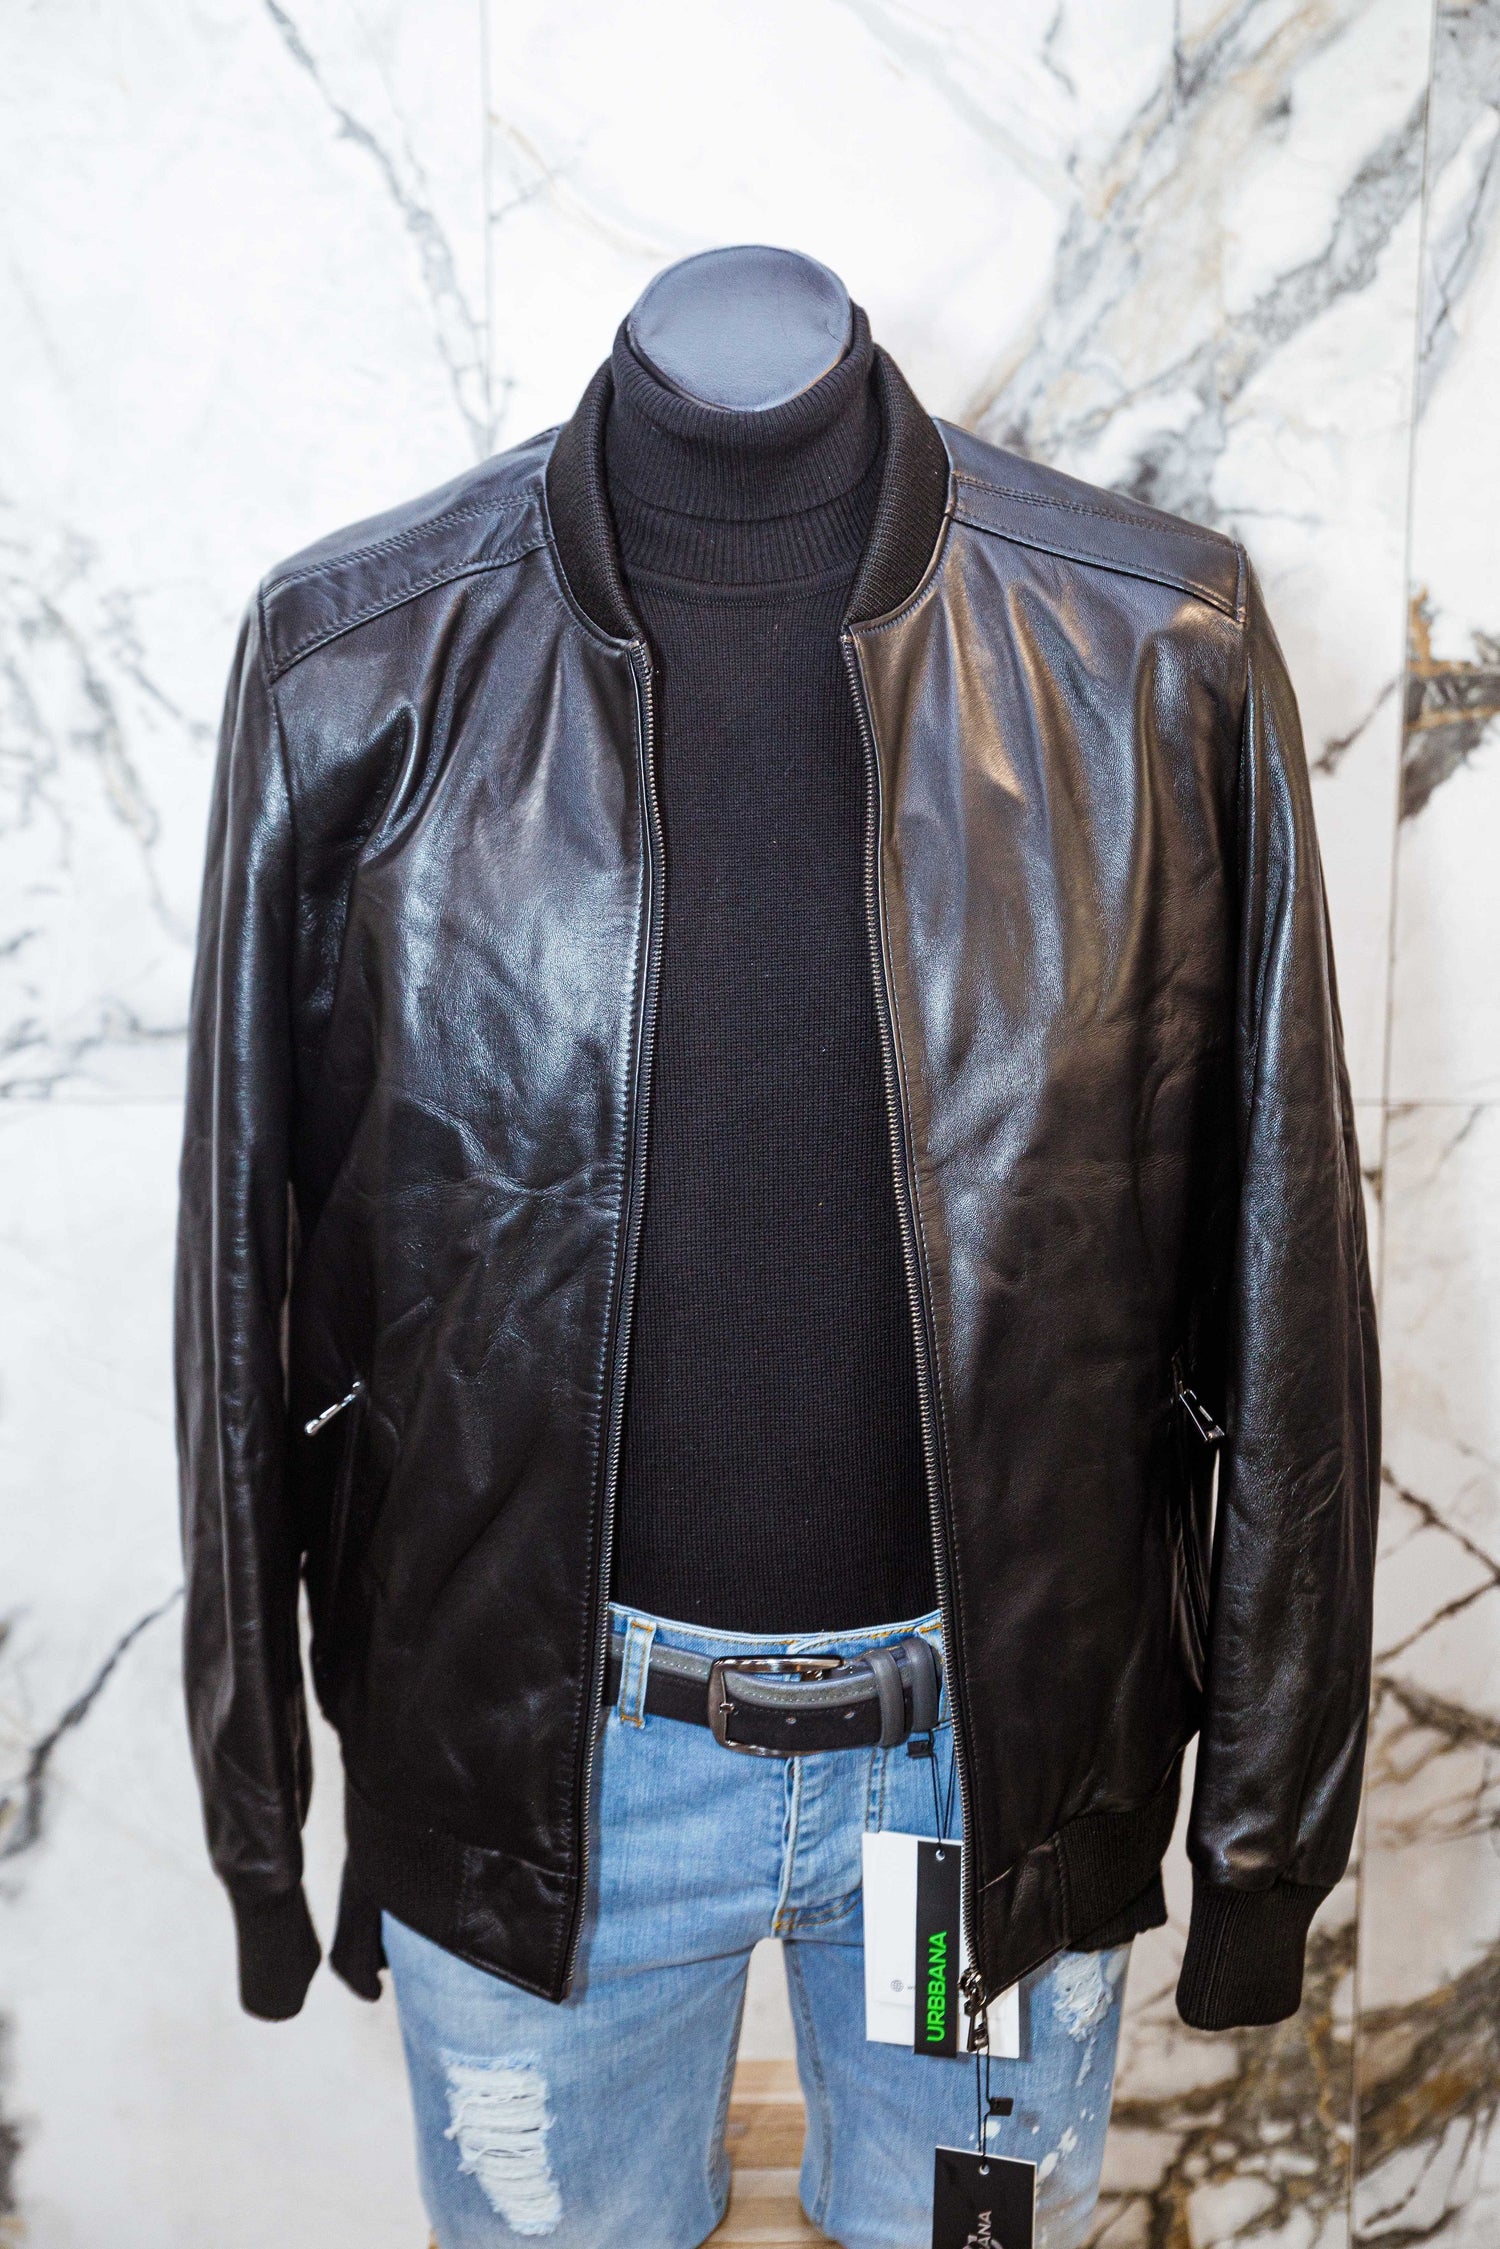 Lambskin Leather Jacket - Minimal Black - Leather Jacket by Urbbana